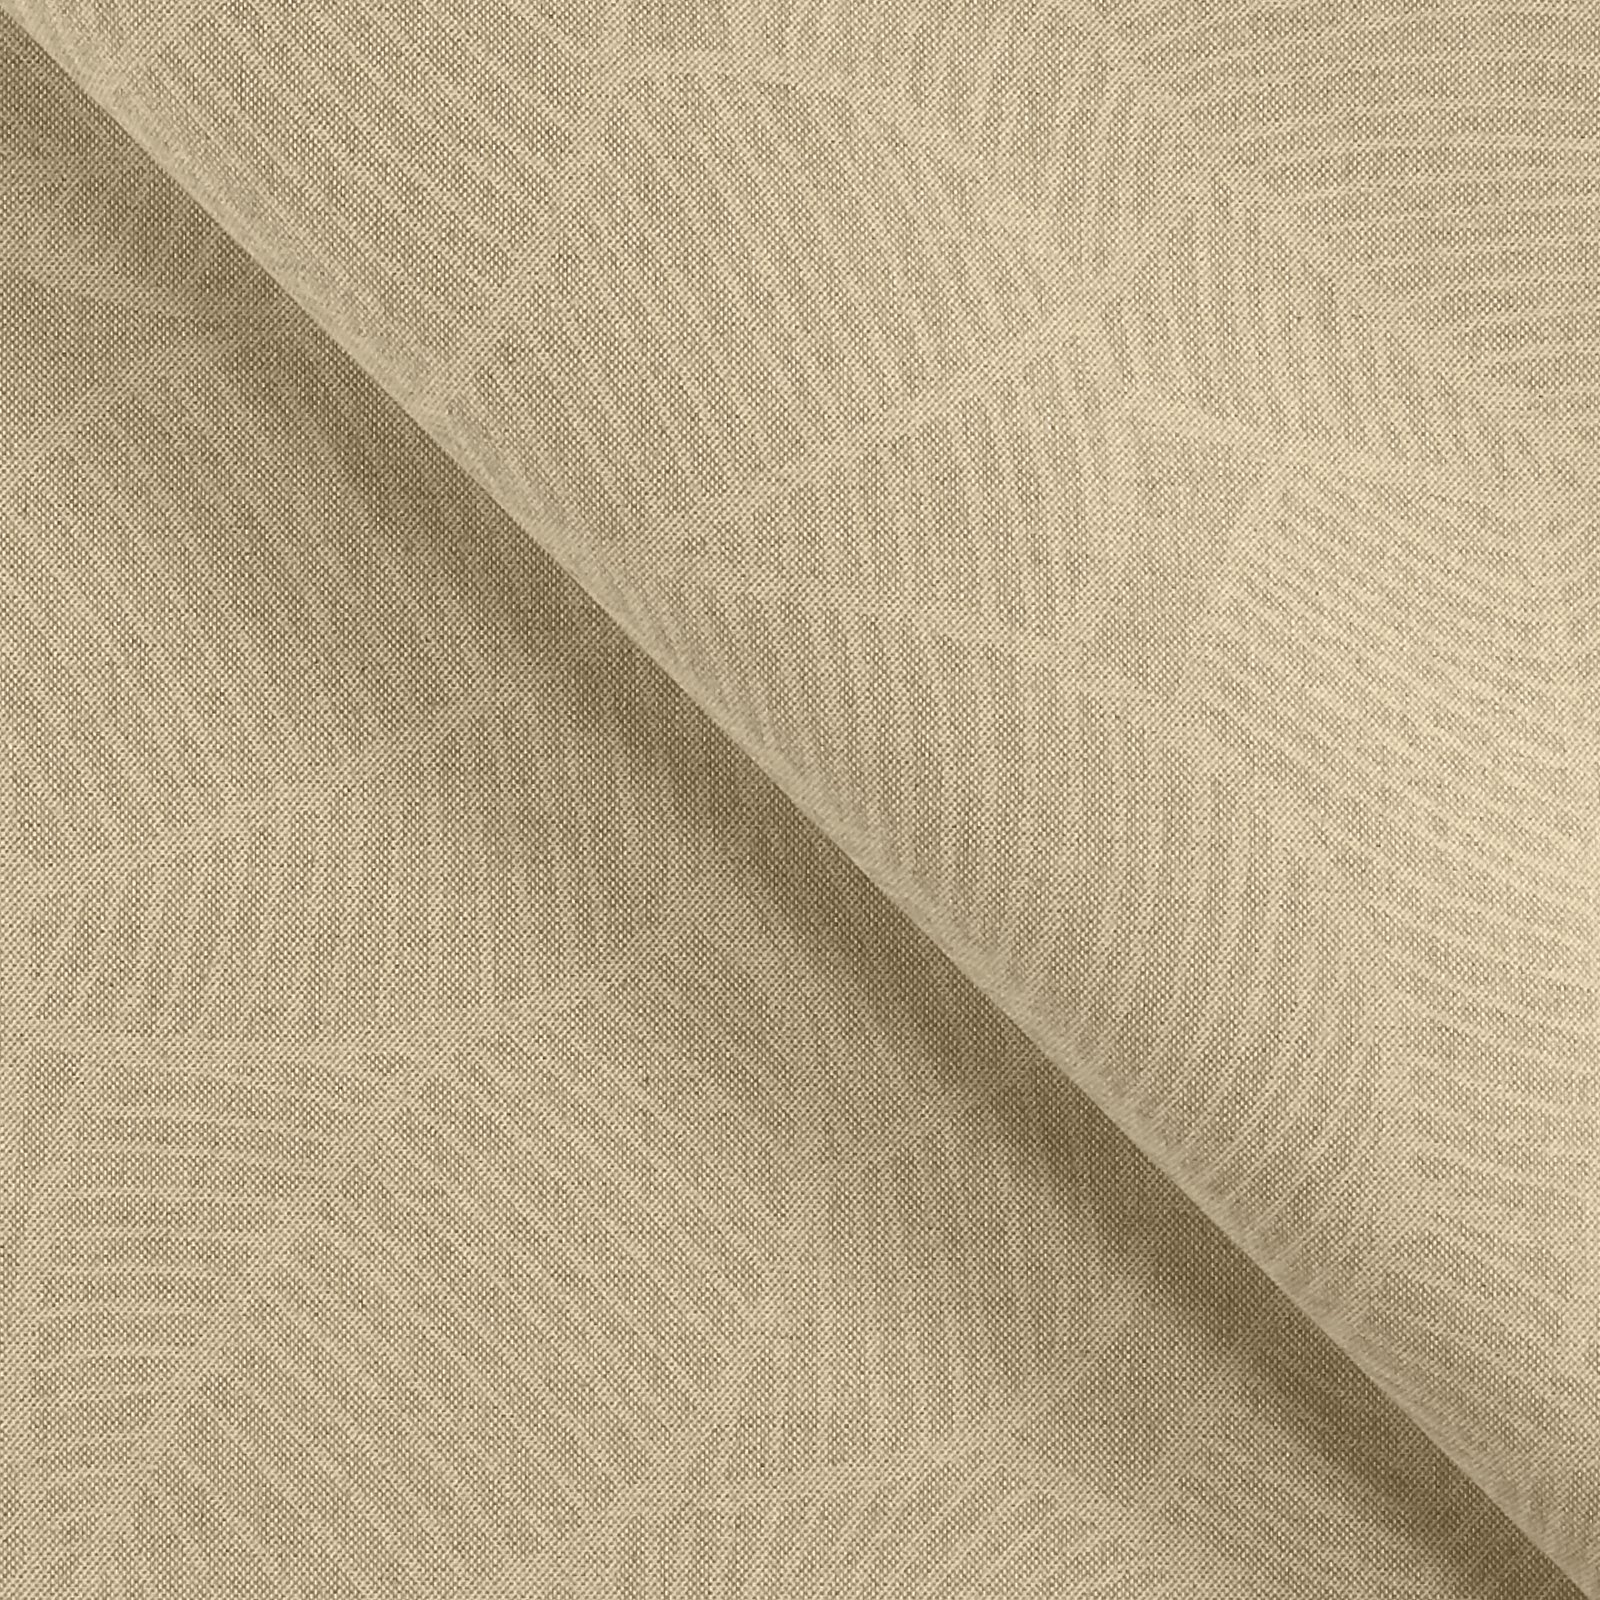 Textilwachstuch, Leinenlook mit Blättern 870273_pack